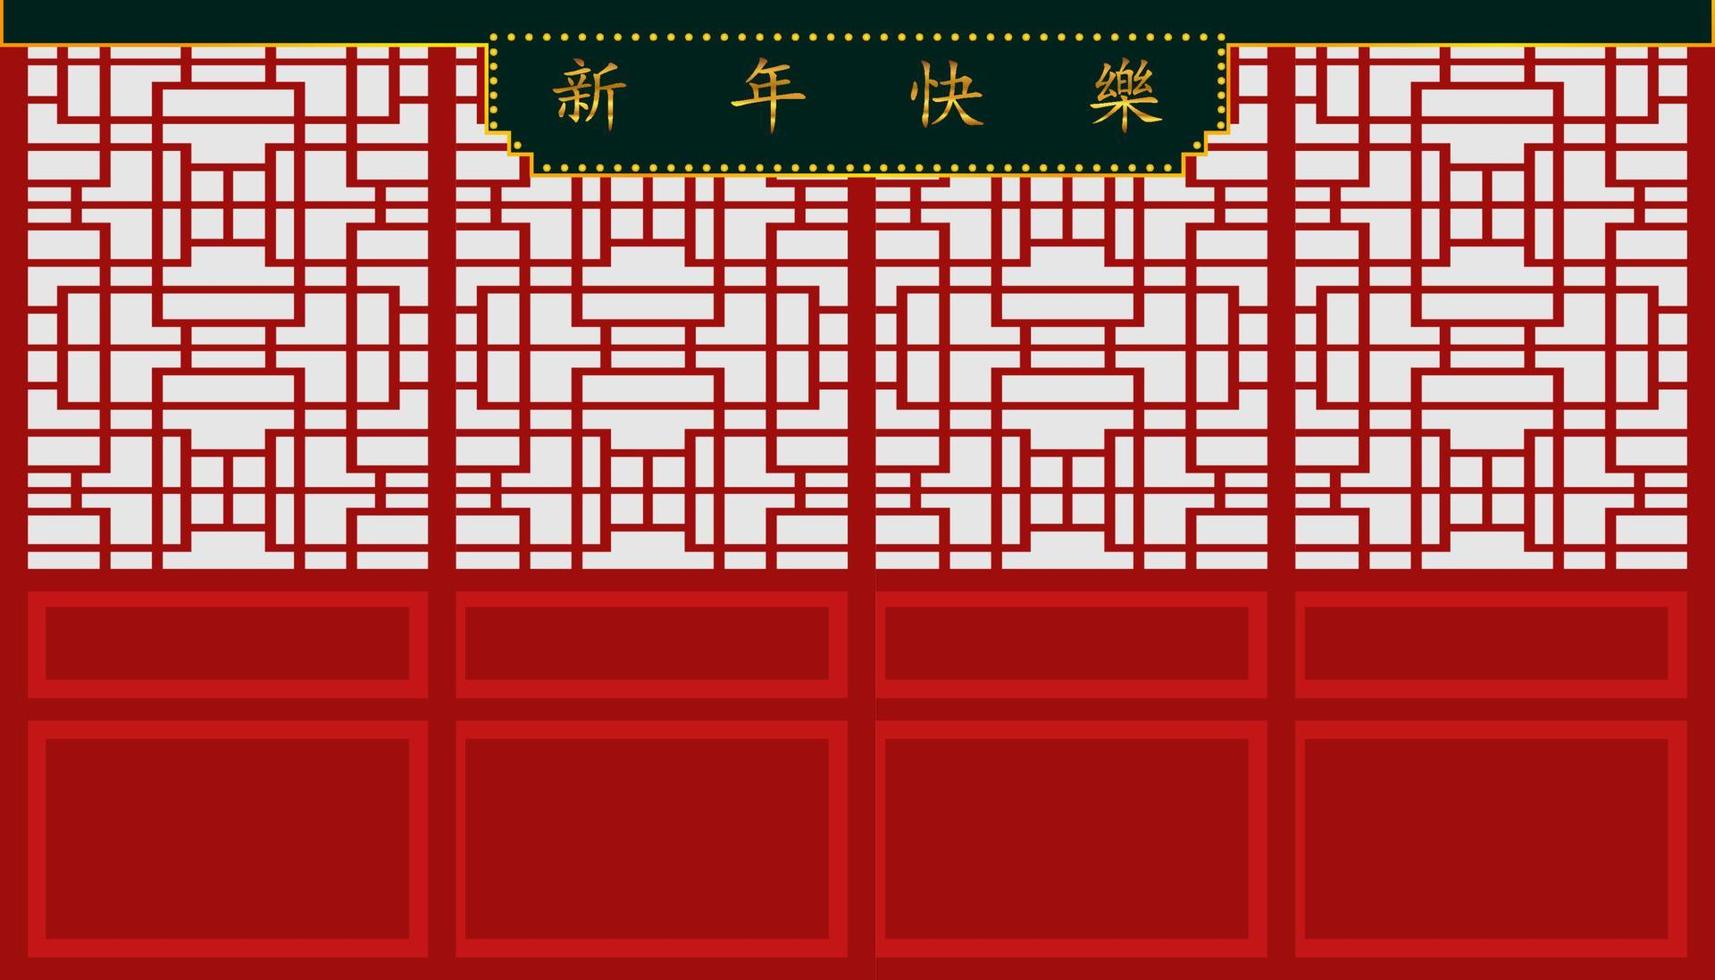 feliz año nuevo chino. signo de xin nian kual le personajes para el festival cny y hermoso patrón de puerta y pared. categoría de vacaciones. ilustración vectorial eps10 vector